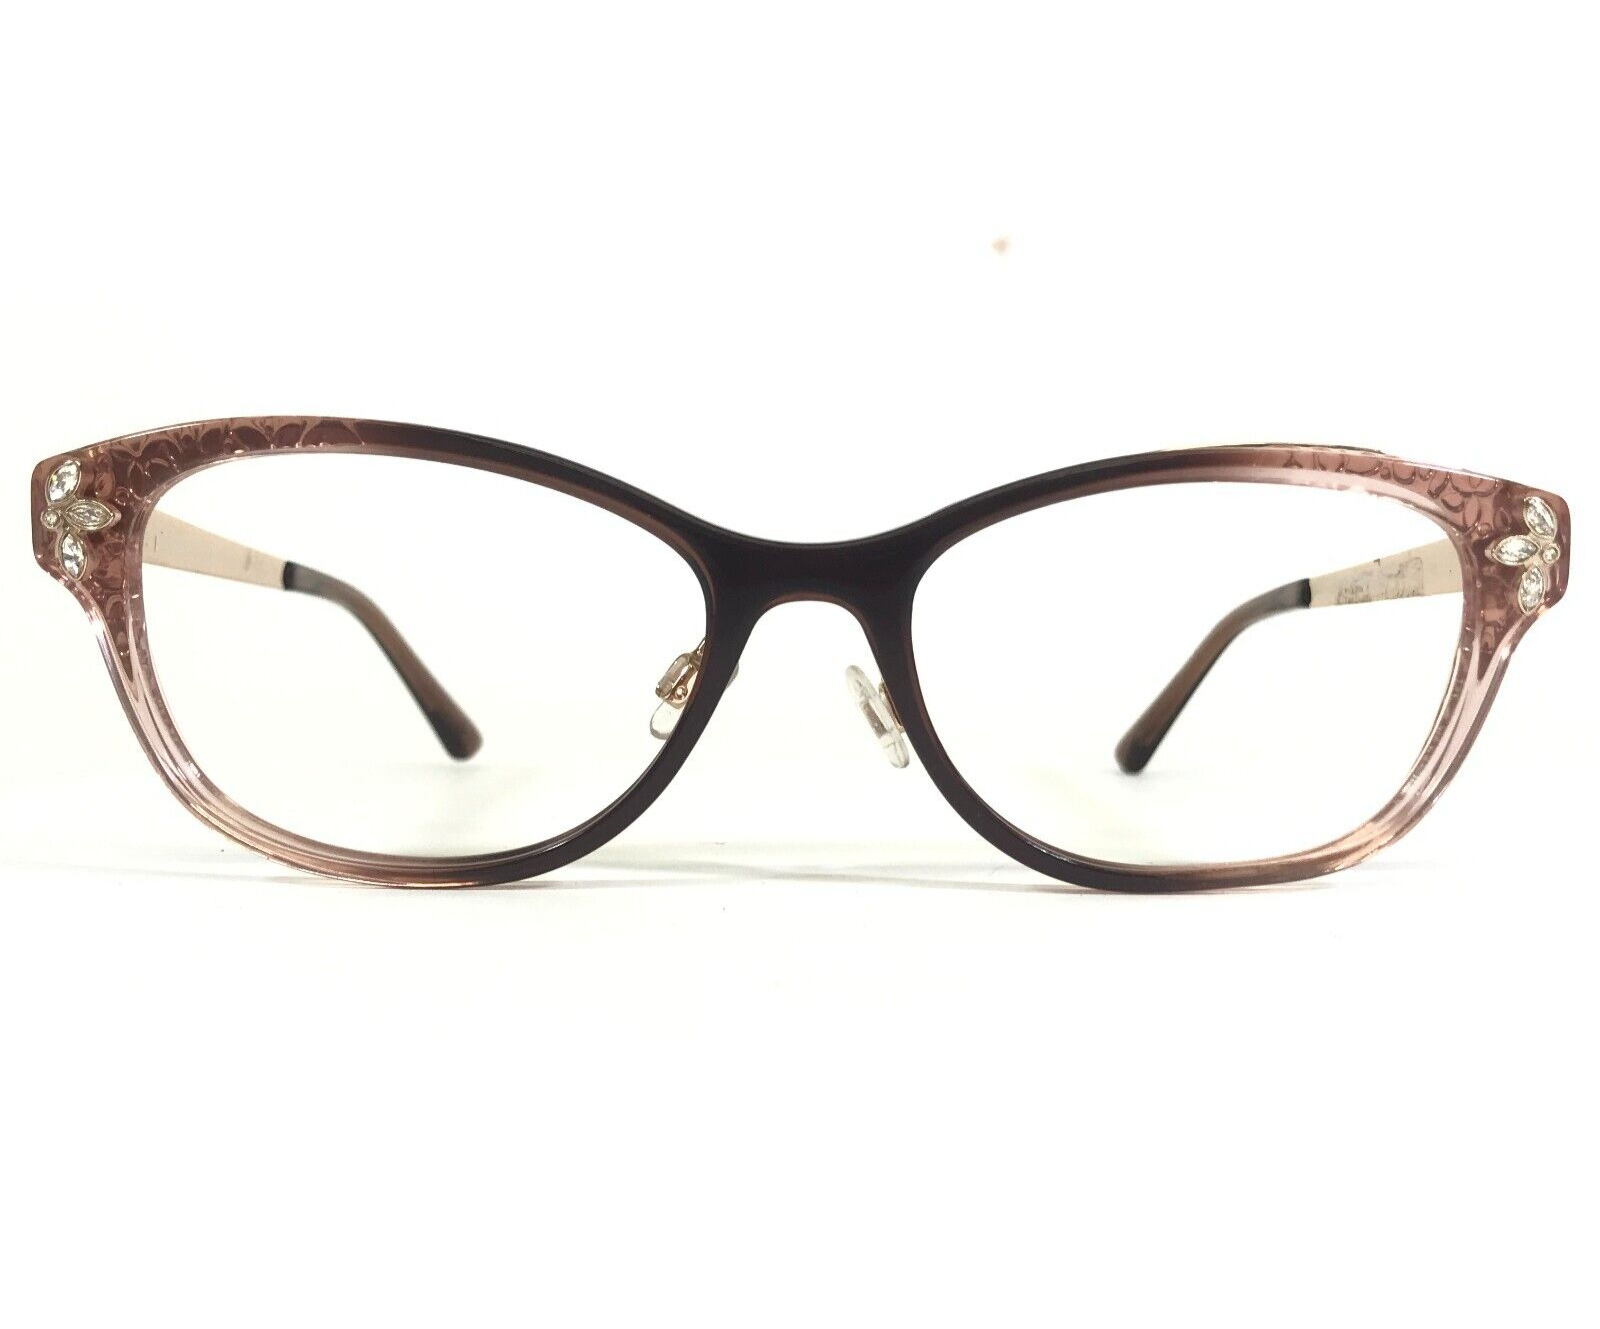 Primary image for bebe Eyeglasses Frames BB5168 200 TOPAZ GRADIENT Square Full Rim 53-17-140